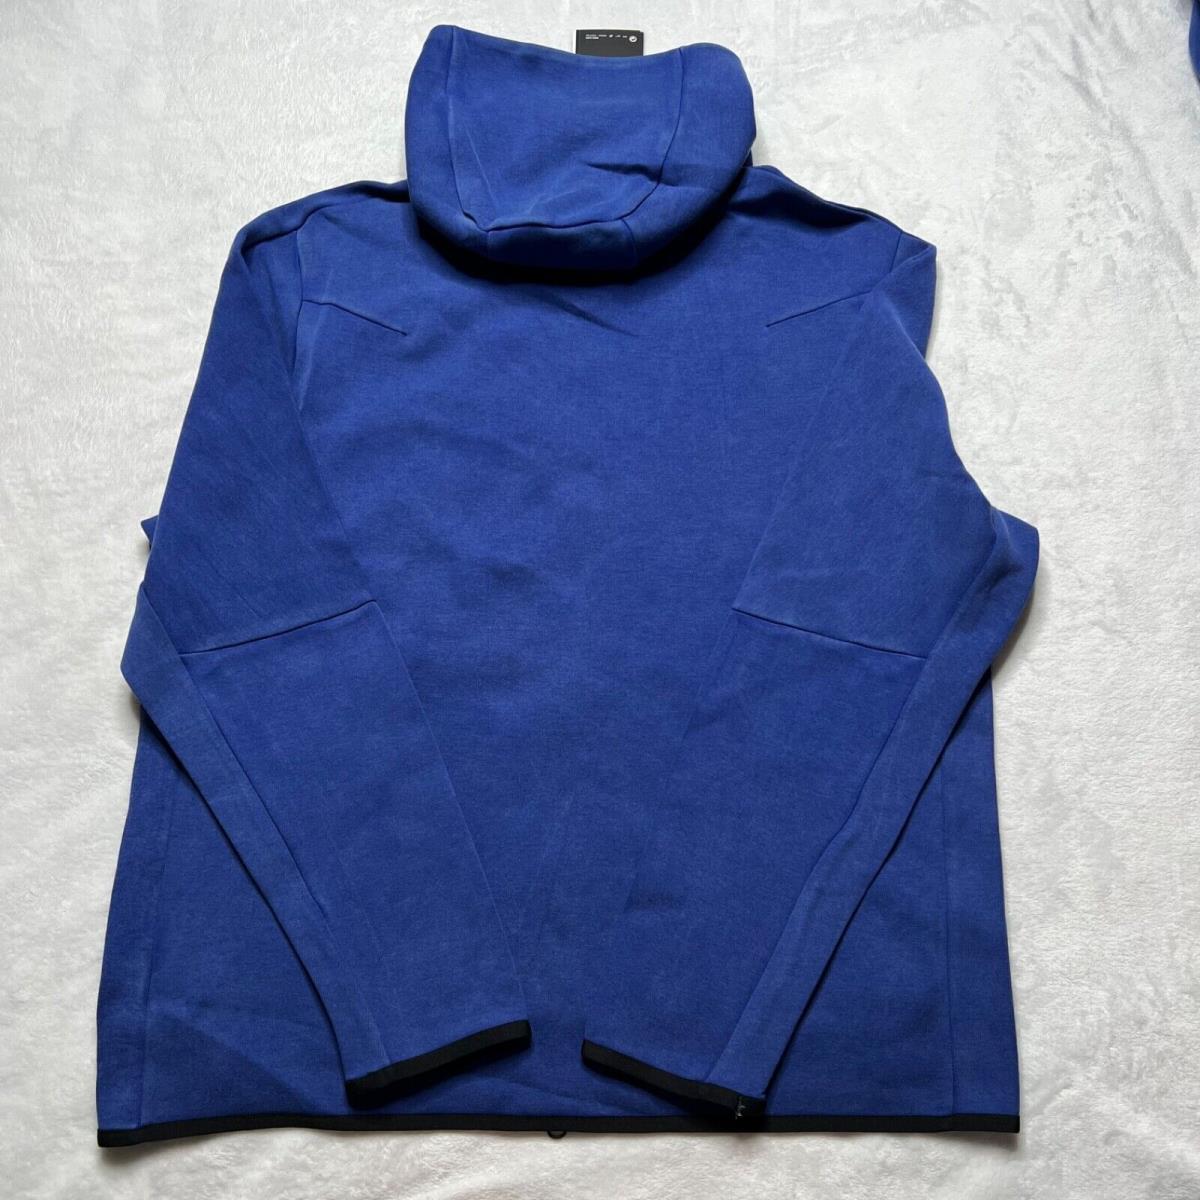 Nike clothing  - Blue 2